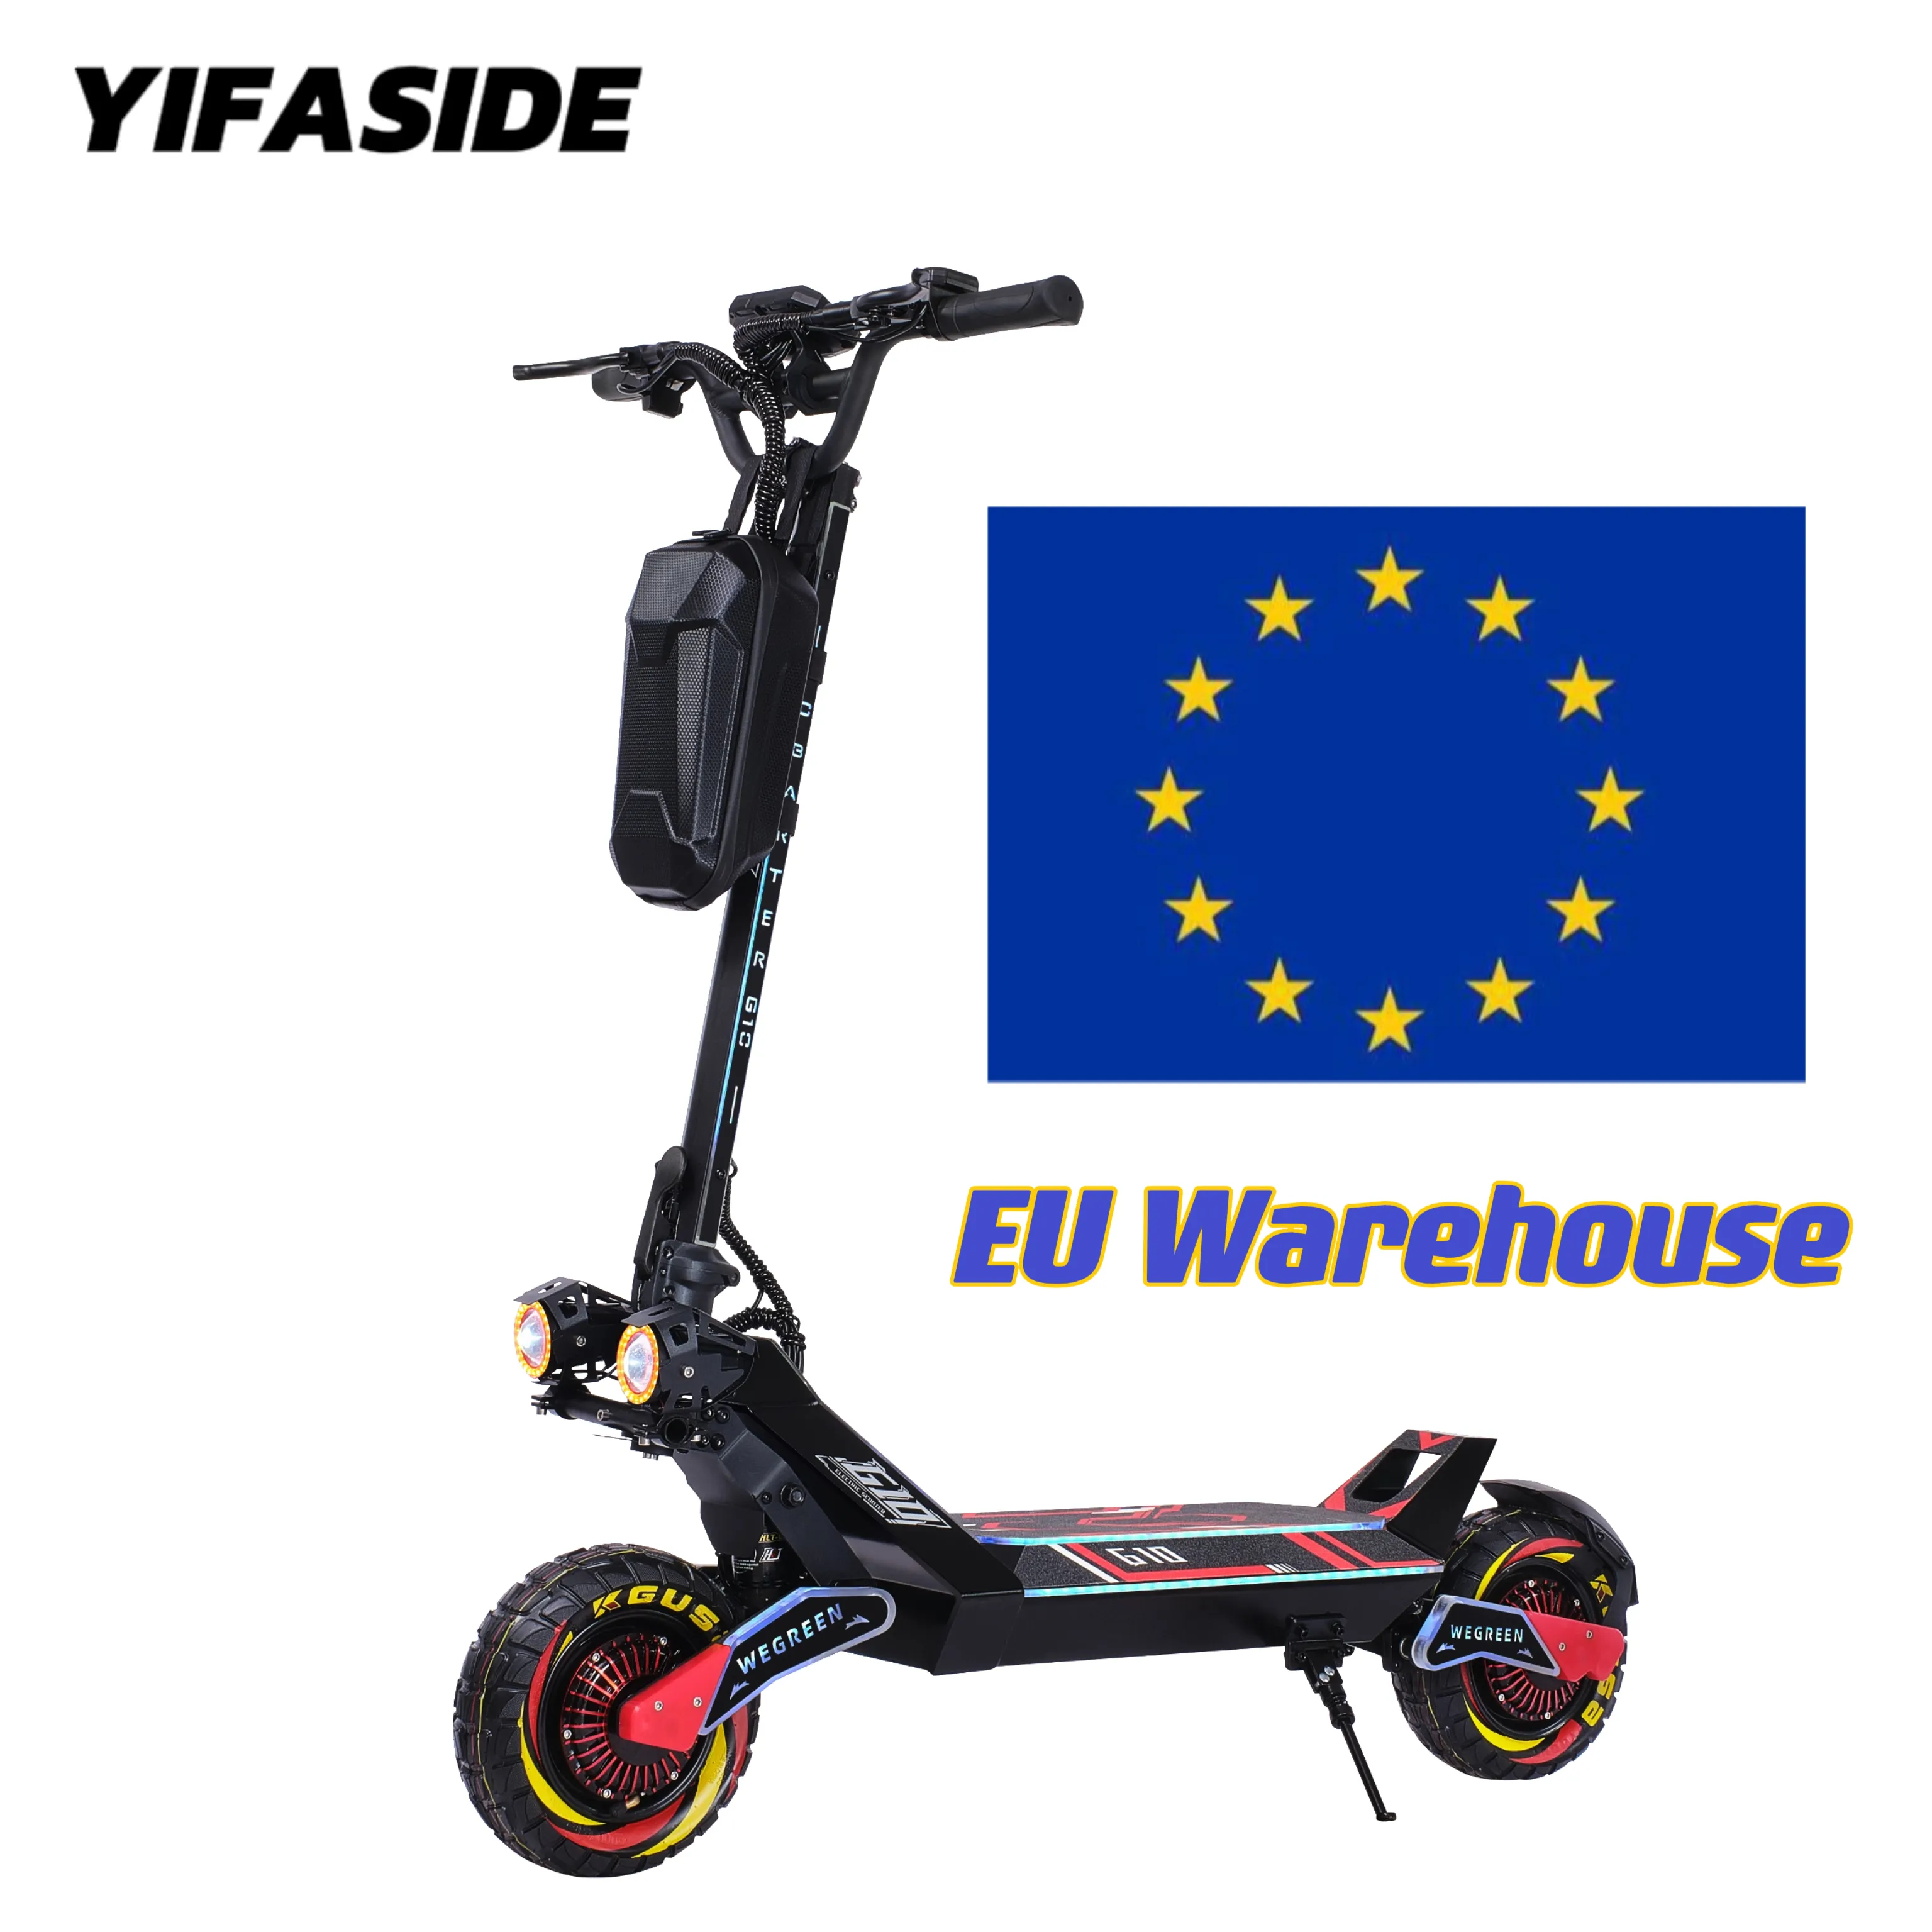 NFC hotsale điện Scooter obarter G10 mạnh mẽ Xách Tay Dành cho người lớn giá rẻ tốc độ cao 10inch chất béo lốp e-bike EU Kho bán buôn